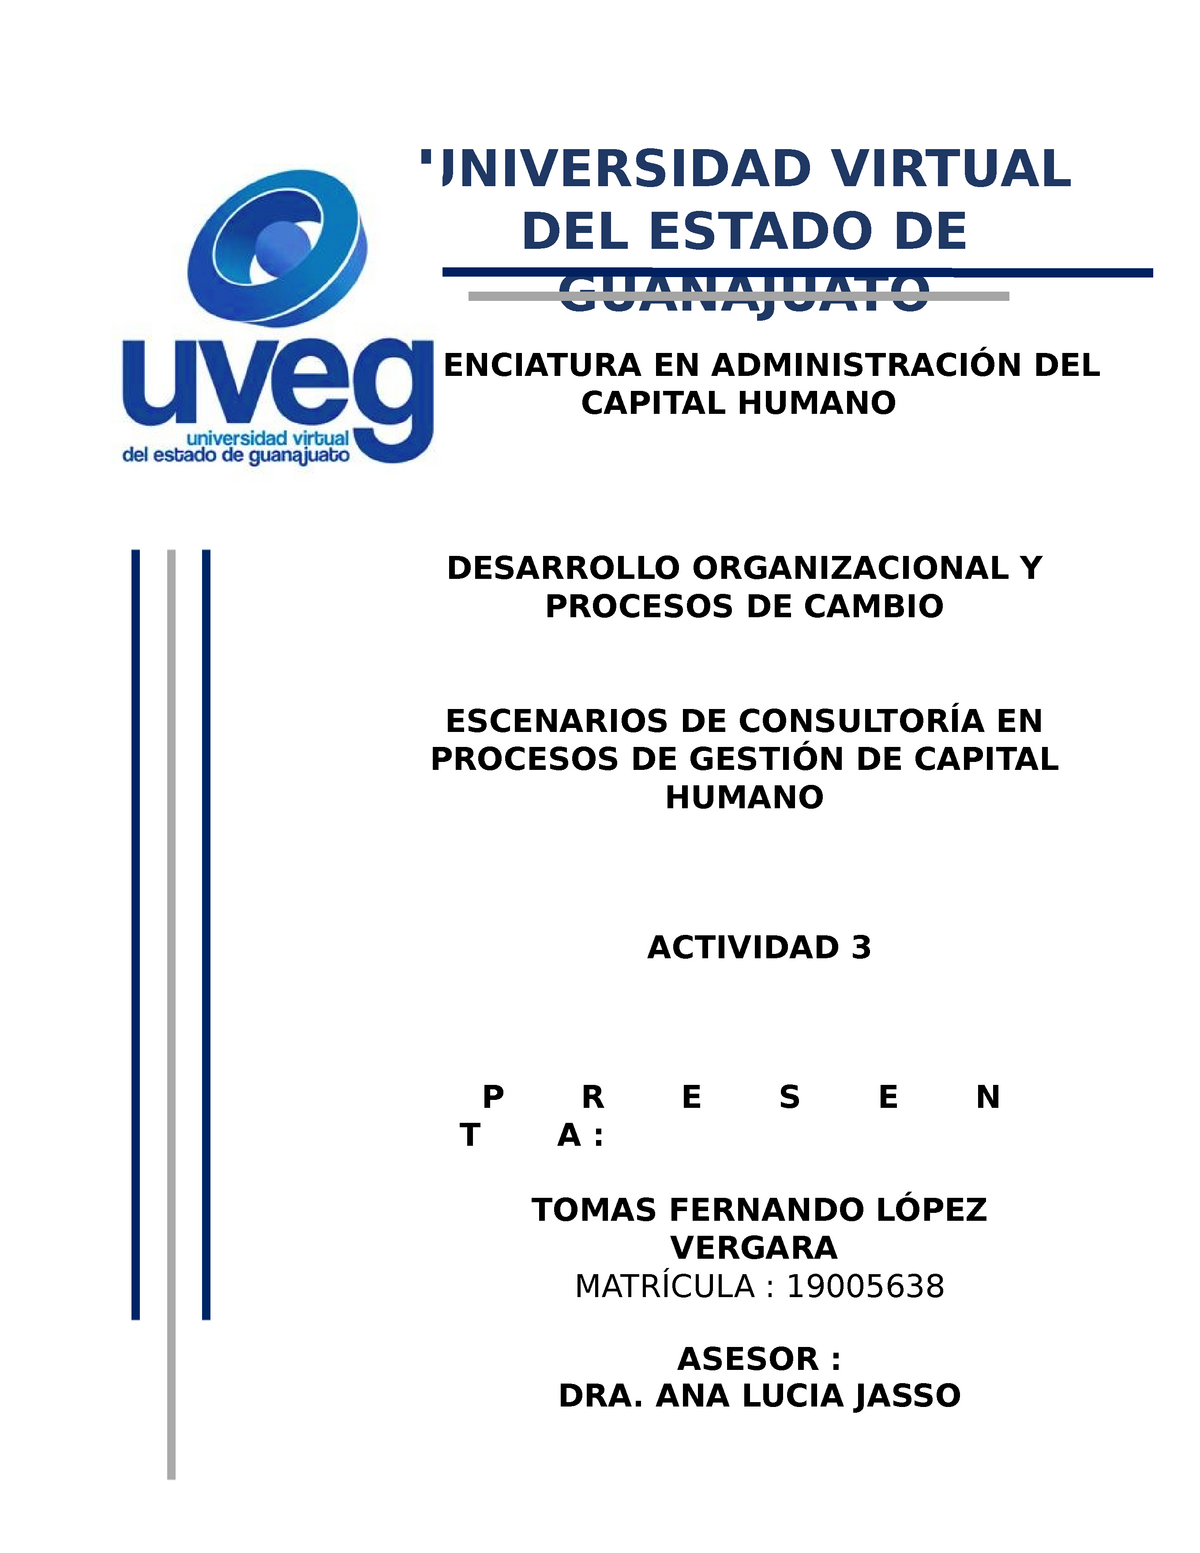 Universidad Virtual Del Estado De Guanajuato Universidad Virtual Del Estado De Guanajuato 9555